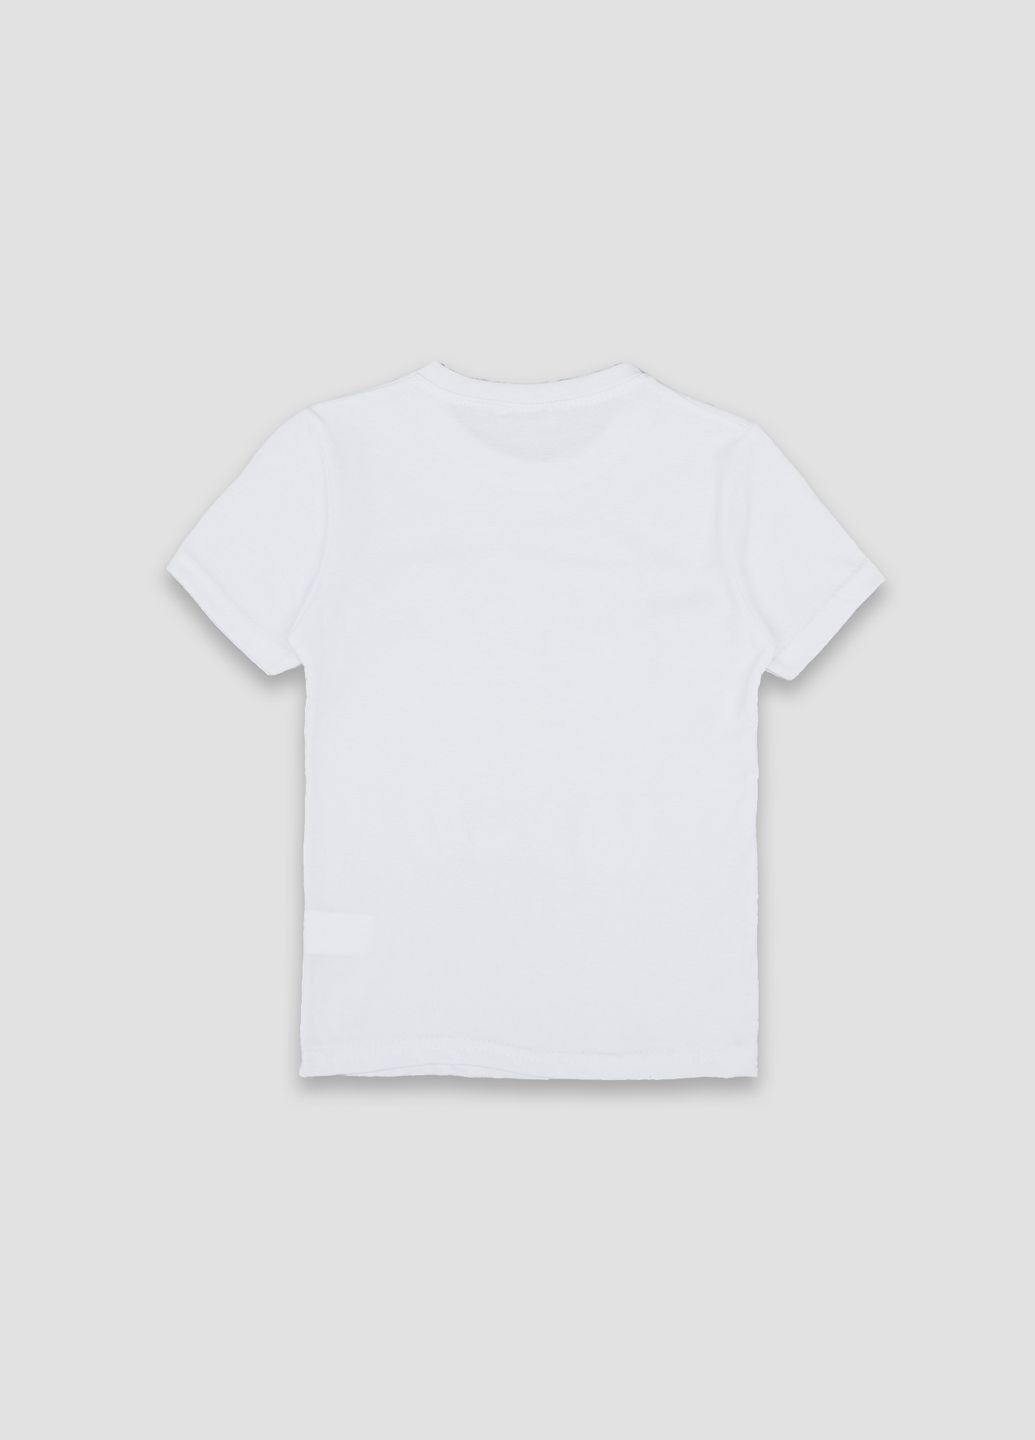 Белая летняя футболка с коротким рукавом для мальчика цвет белый цб-00243970 Essu